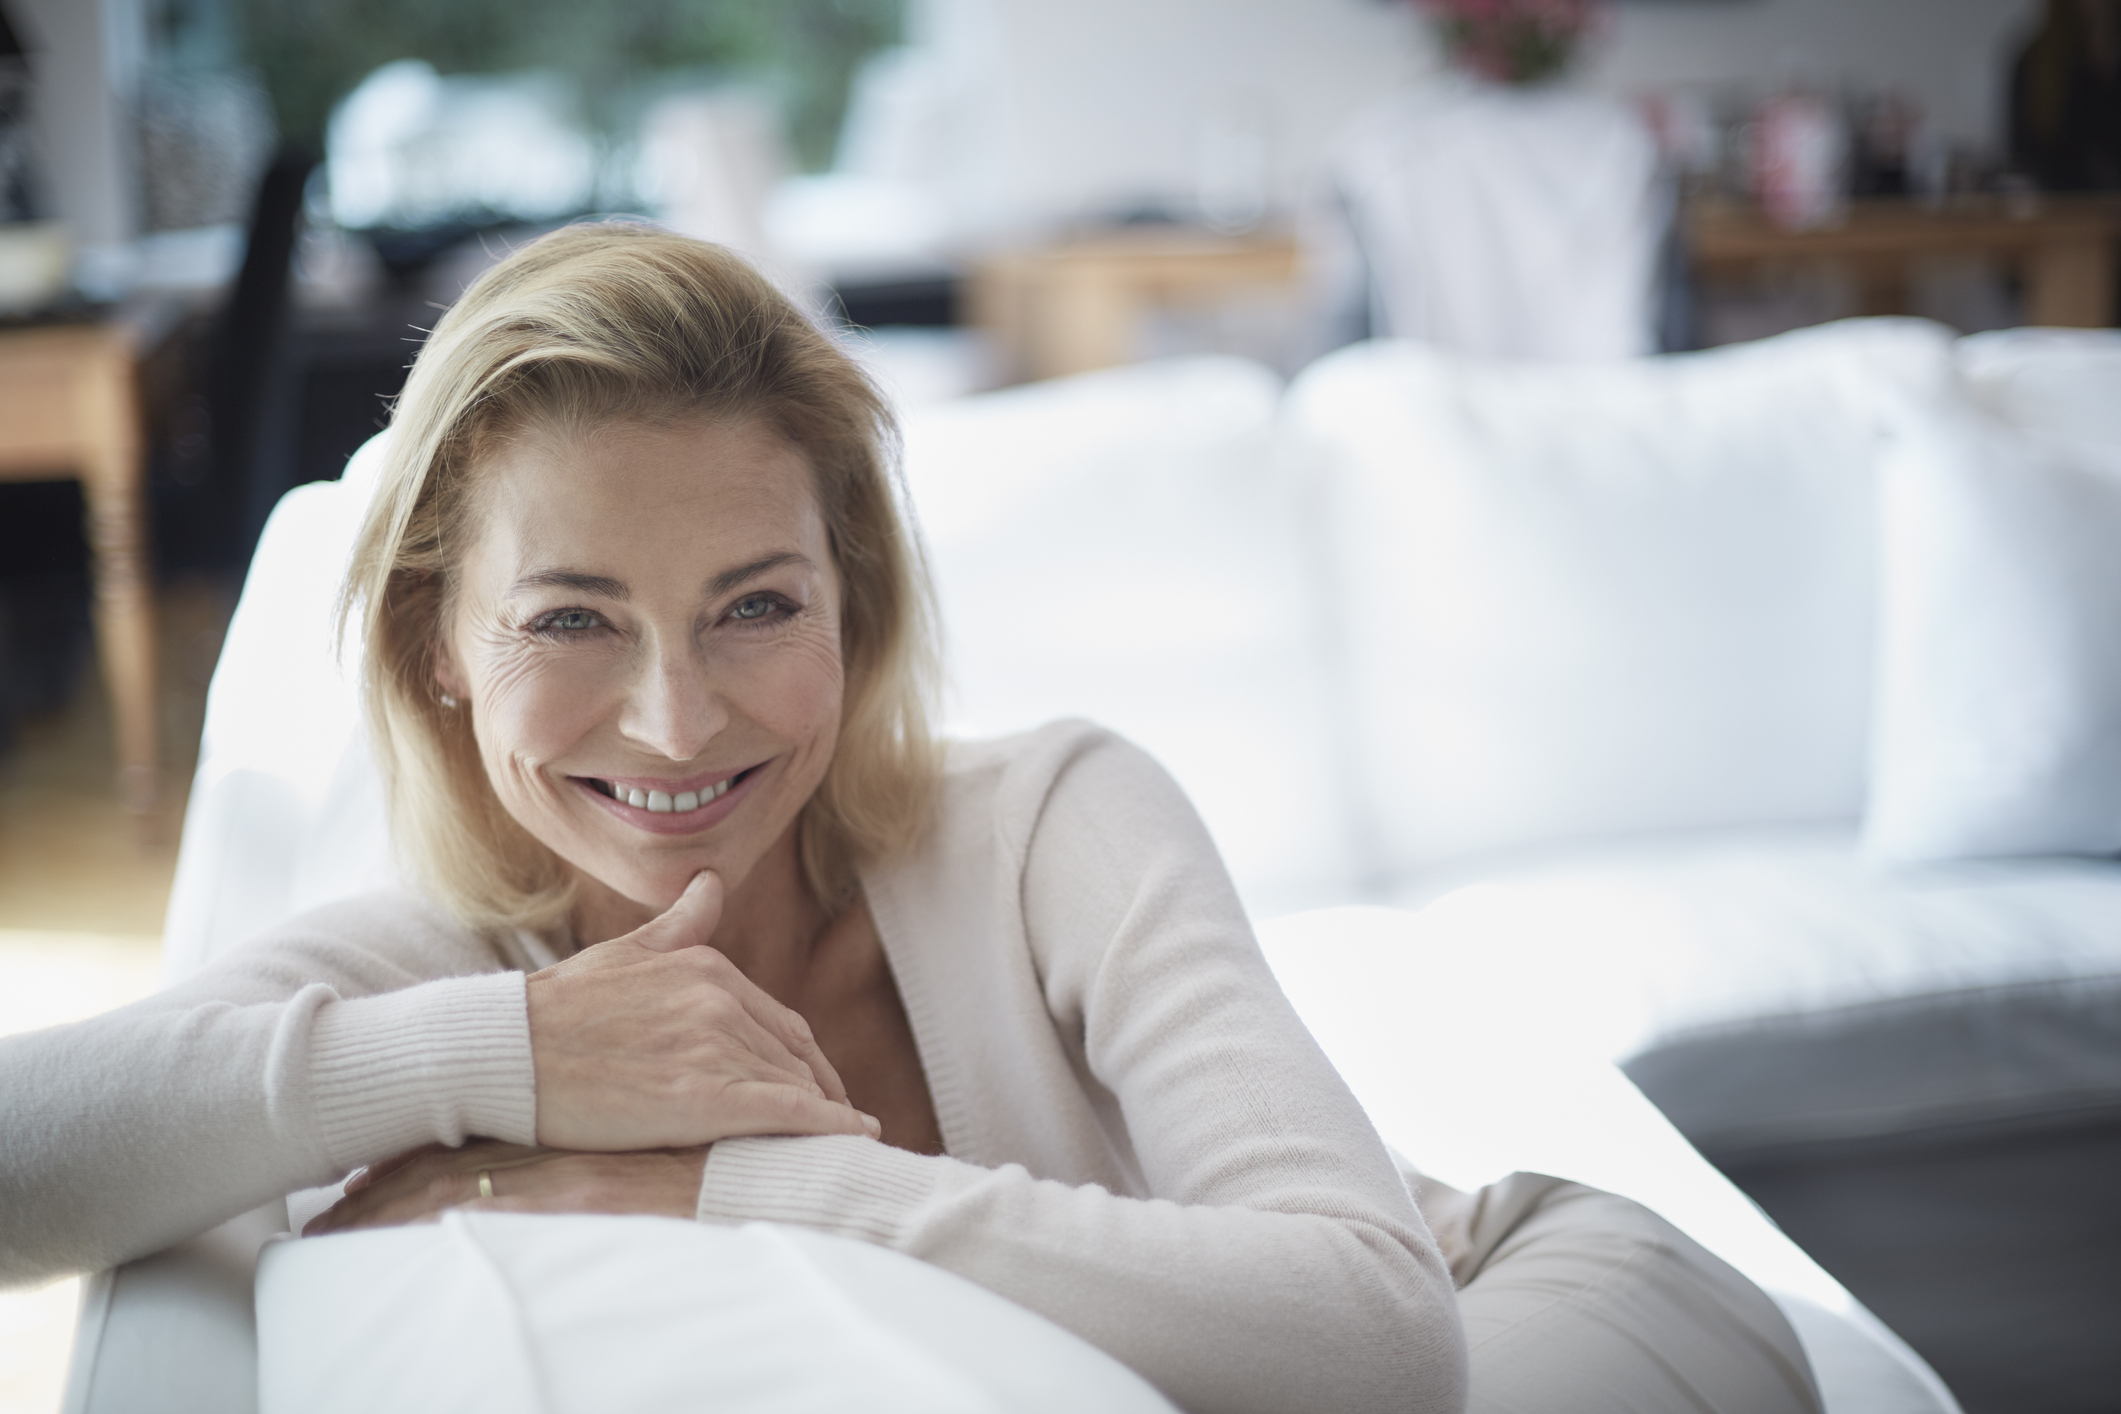 Menopausa: non solo disturbi ma anche benefici. Ecco come viverla al meglio